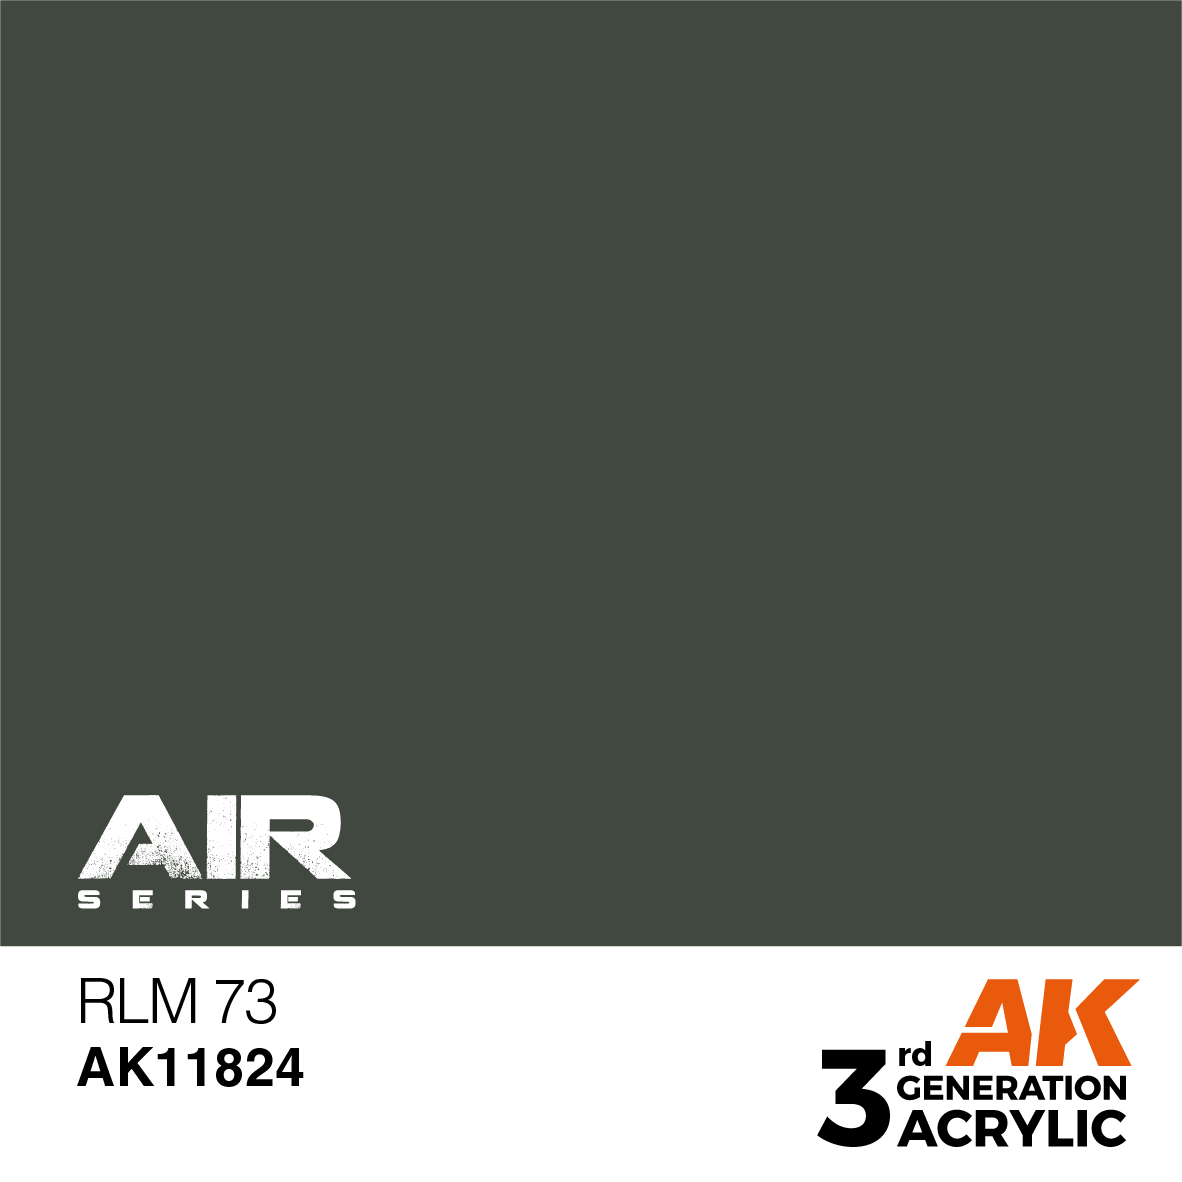 RLM 73 – AIR